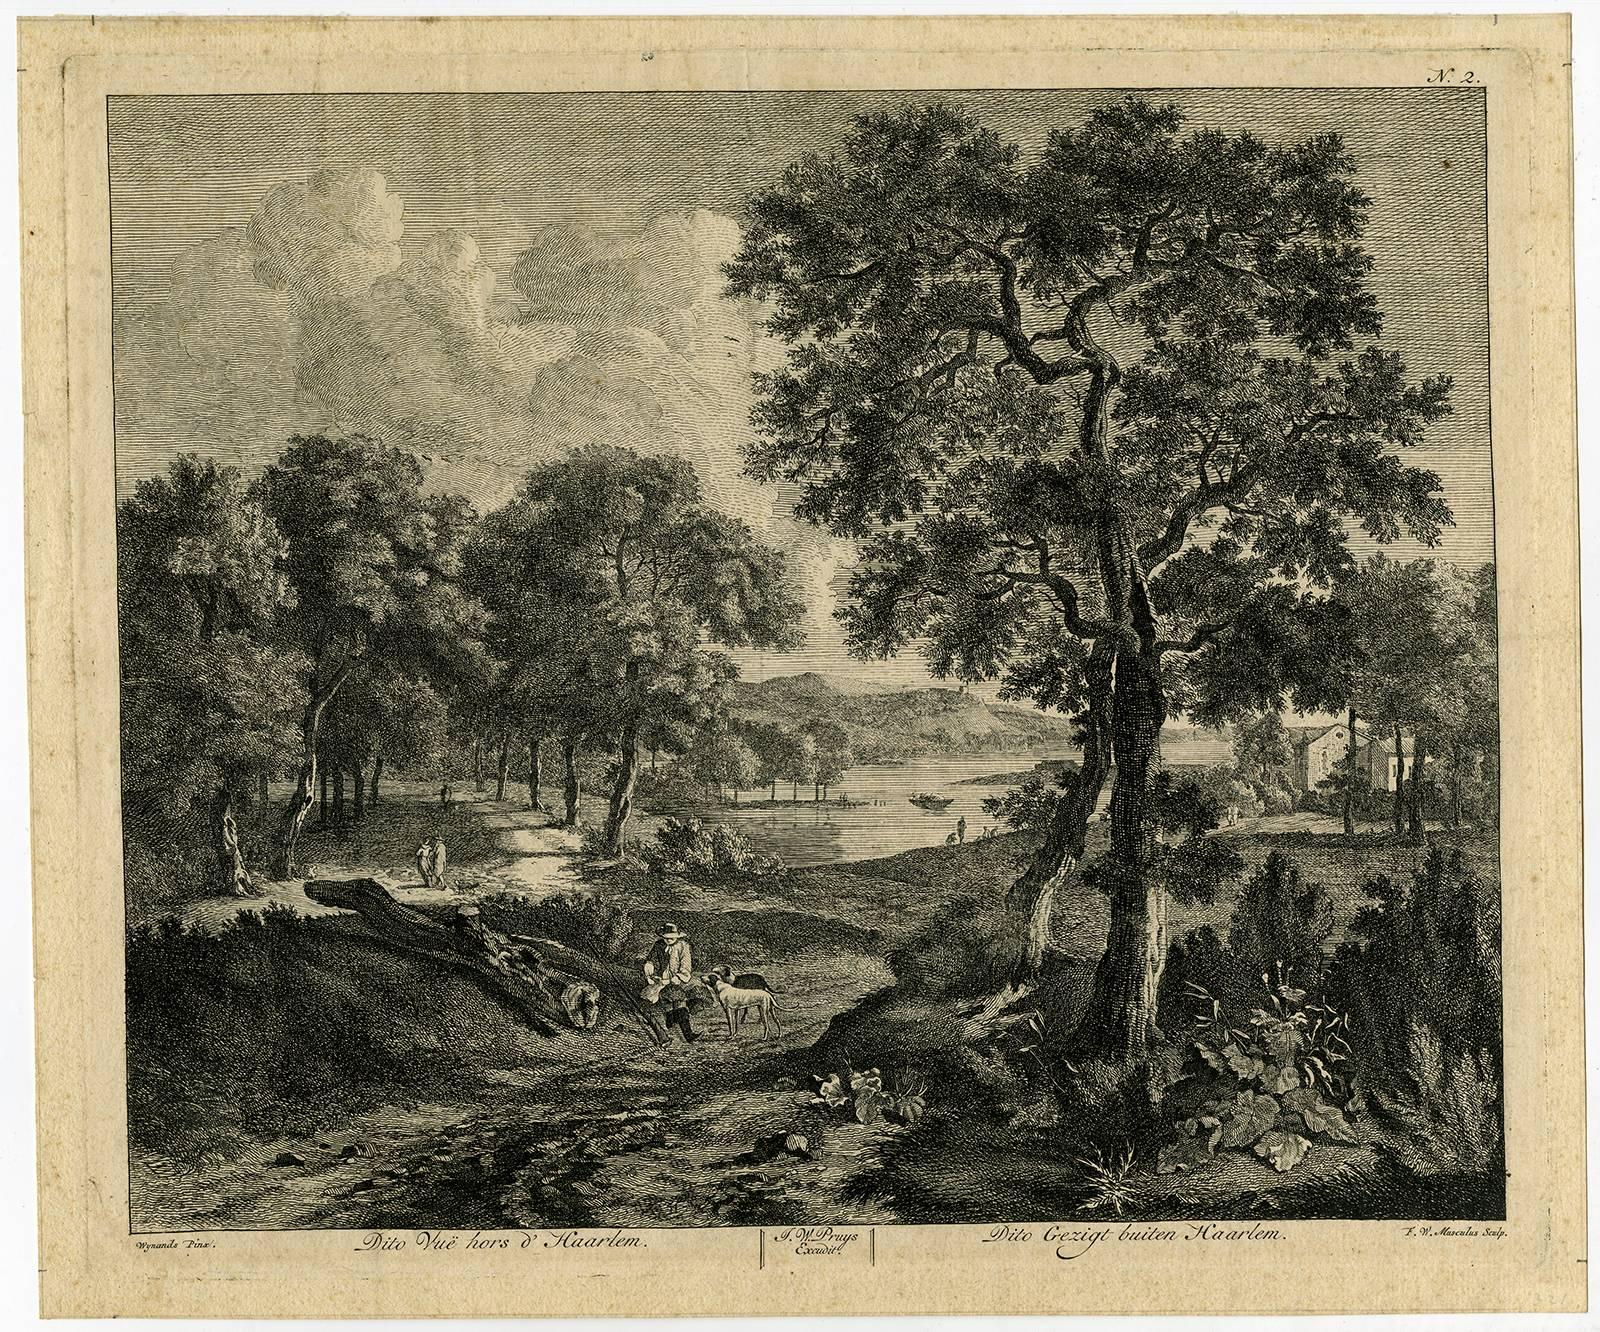 F.W. Musculus Landscape Print - Plate 1.Vue hors d'Haarlem. Plate 2.Dito Vue hors d'Haarlem.